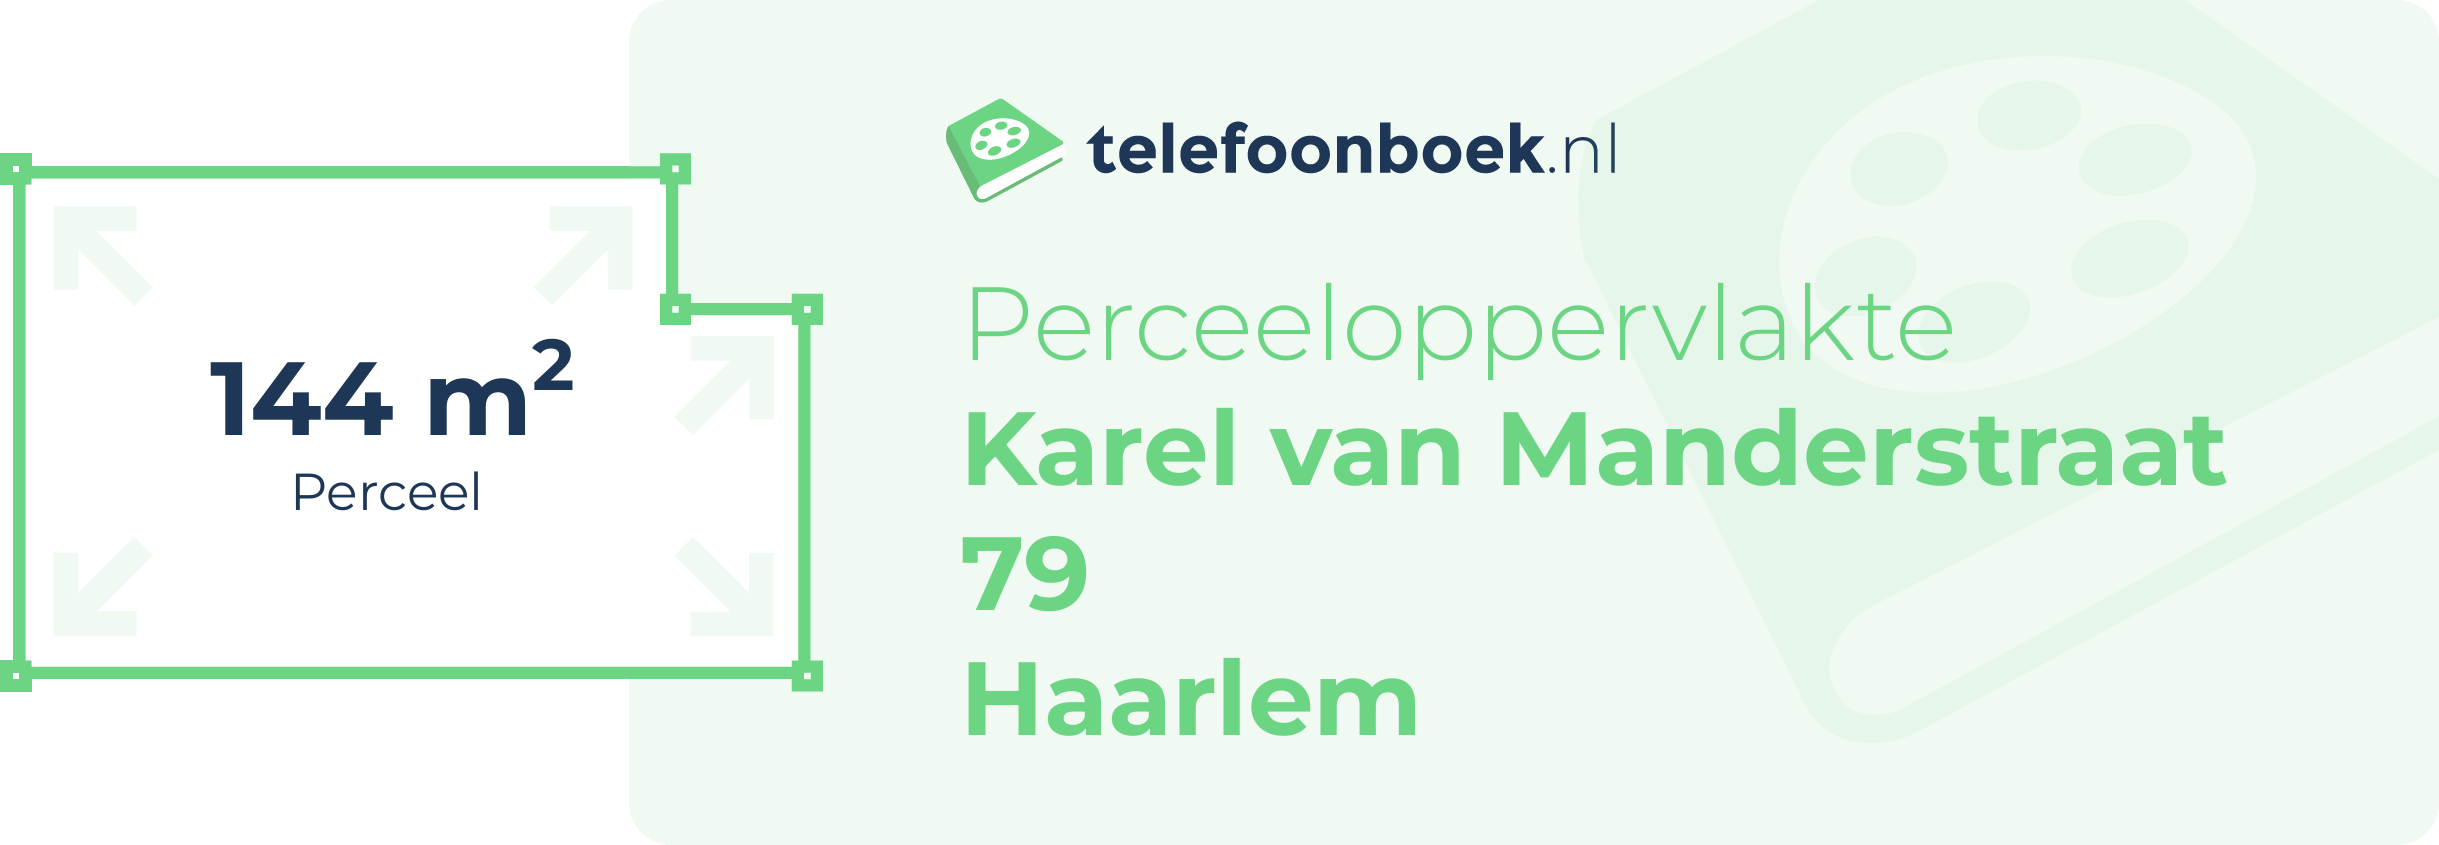 Perceeloppervlakte Karel Van Manderstraat 79 Haarlem